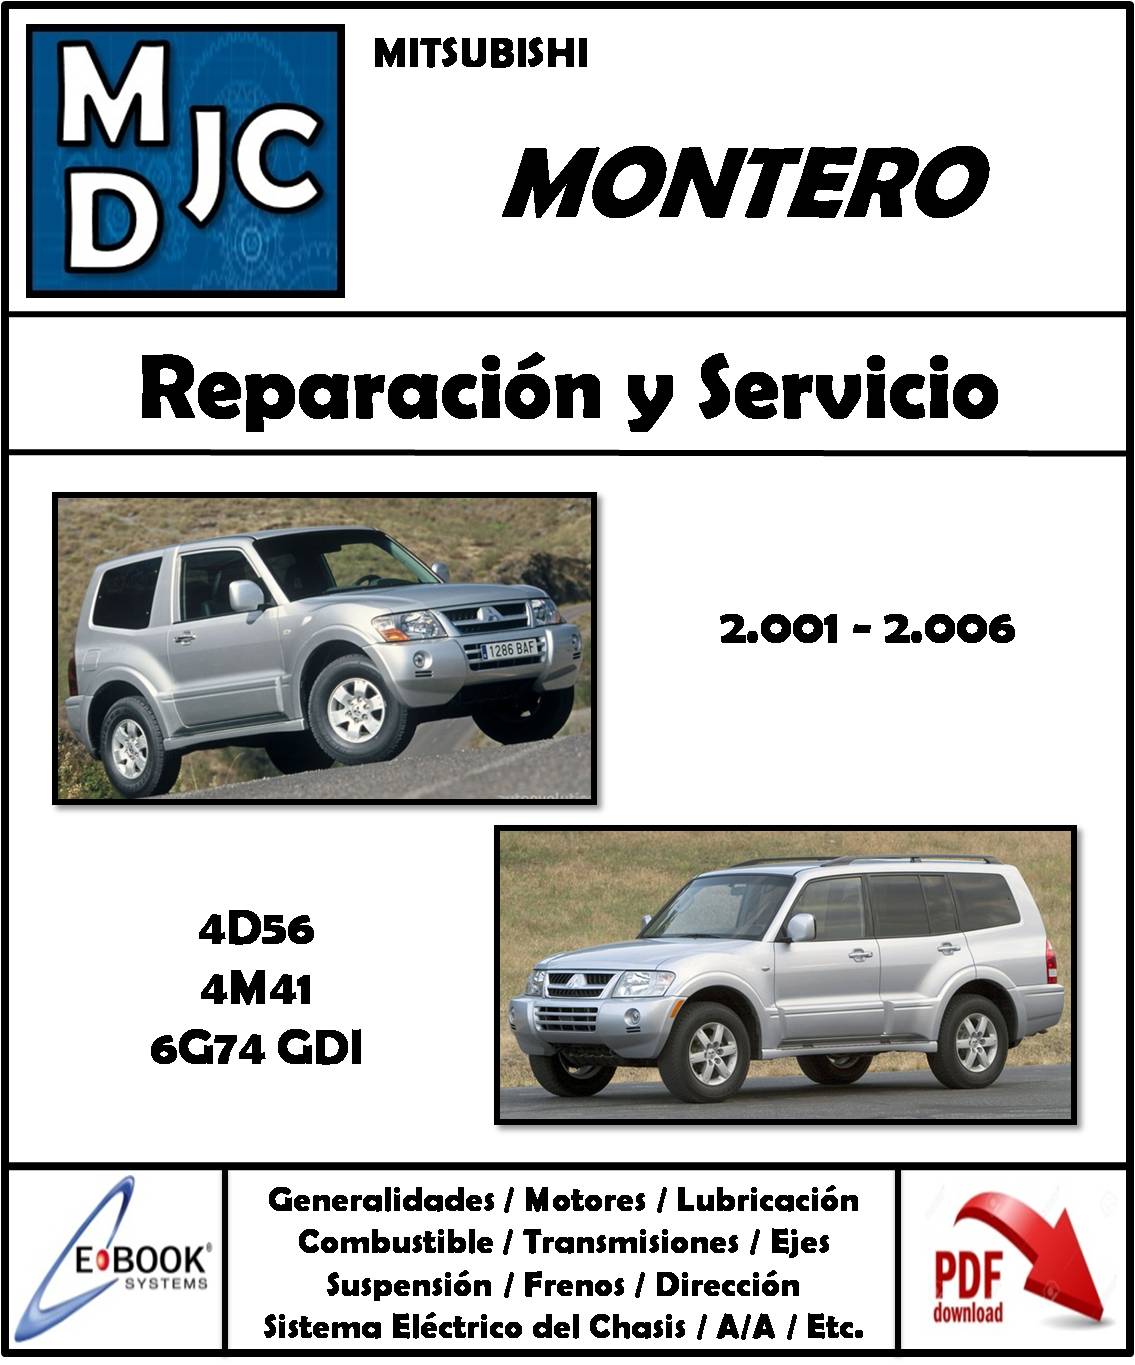 Mitsubishi Montero 2001 - 2006